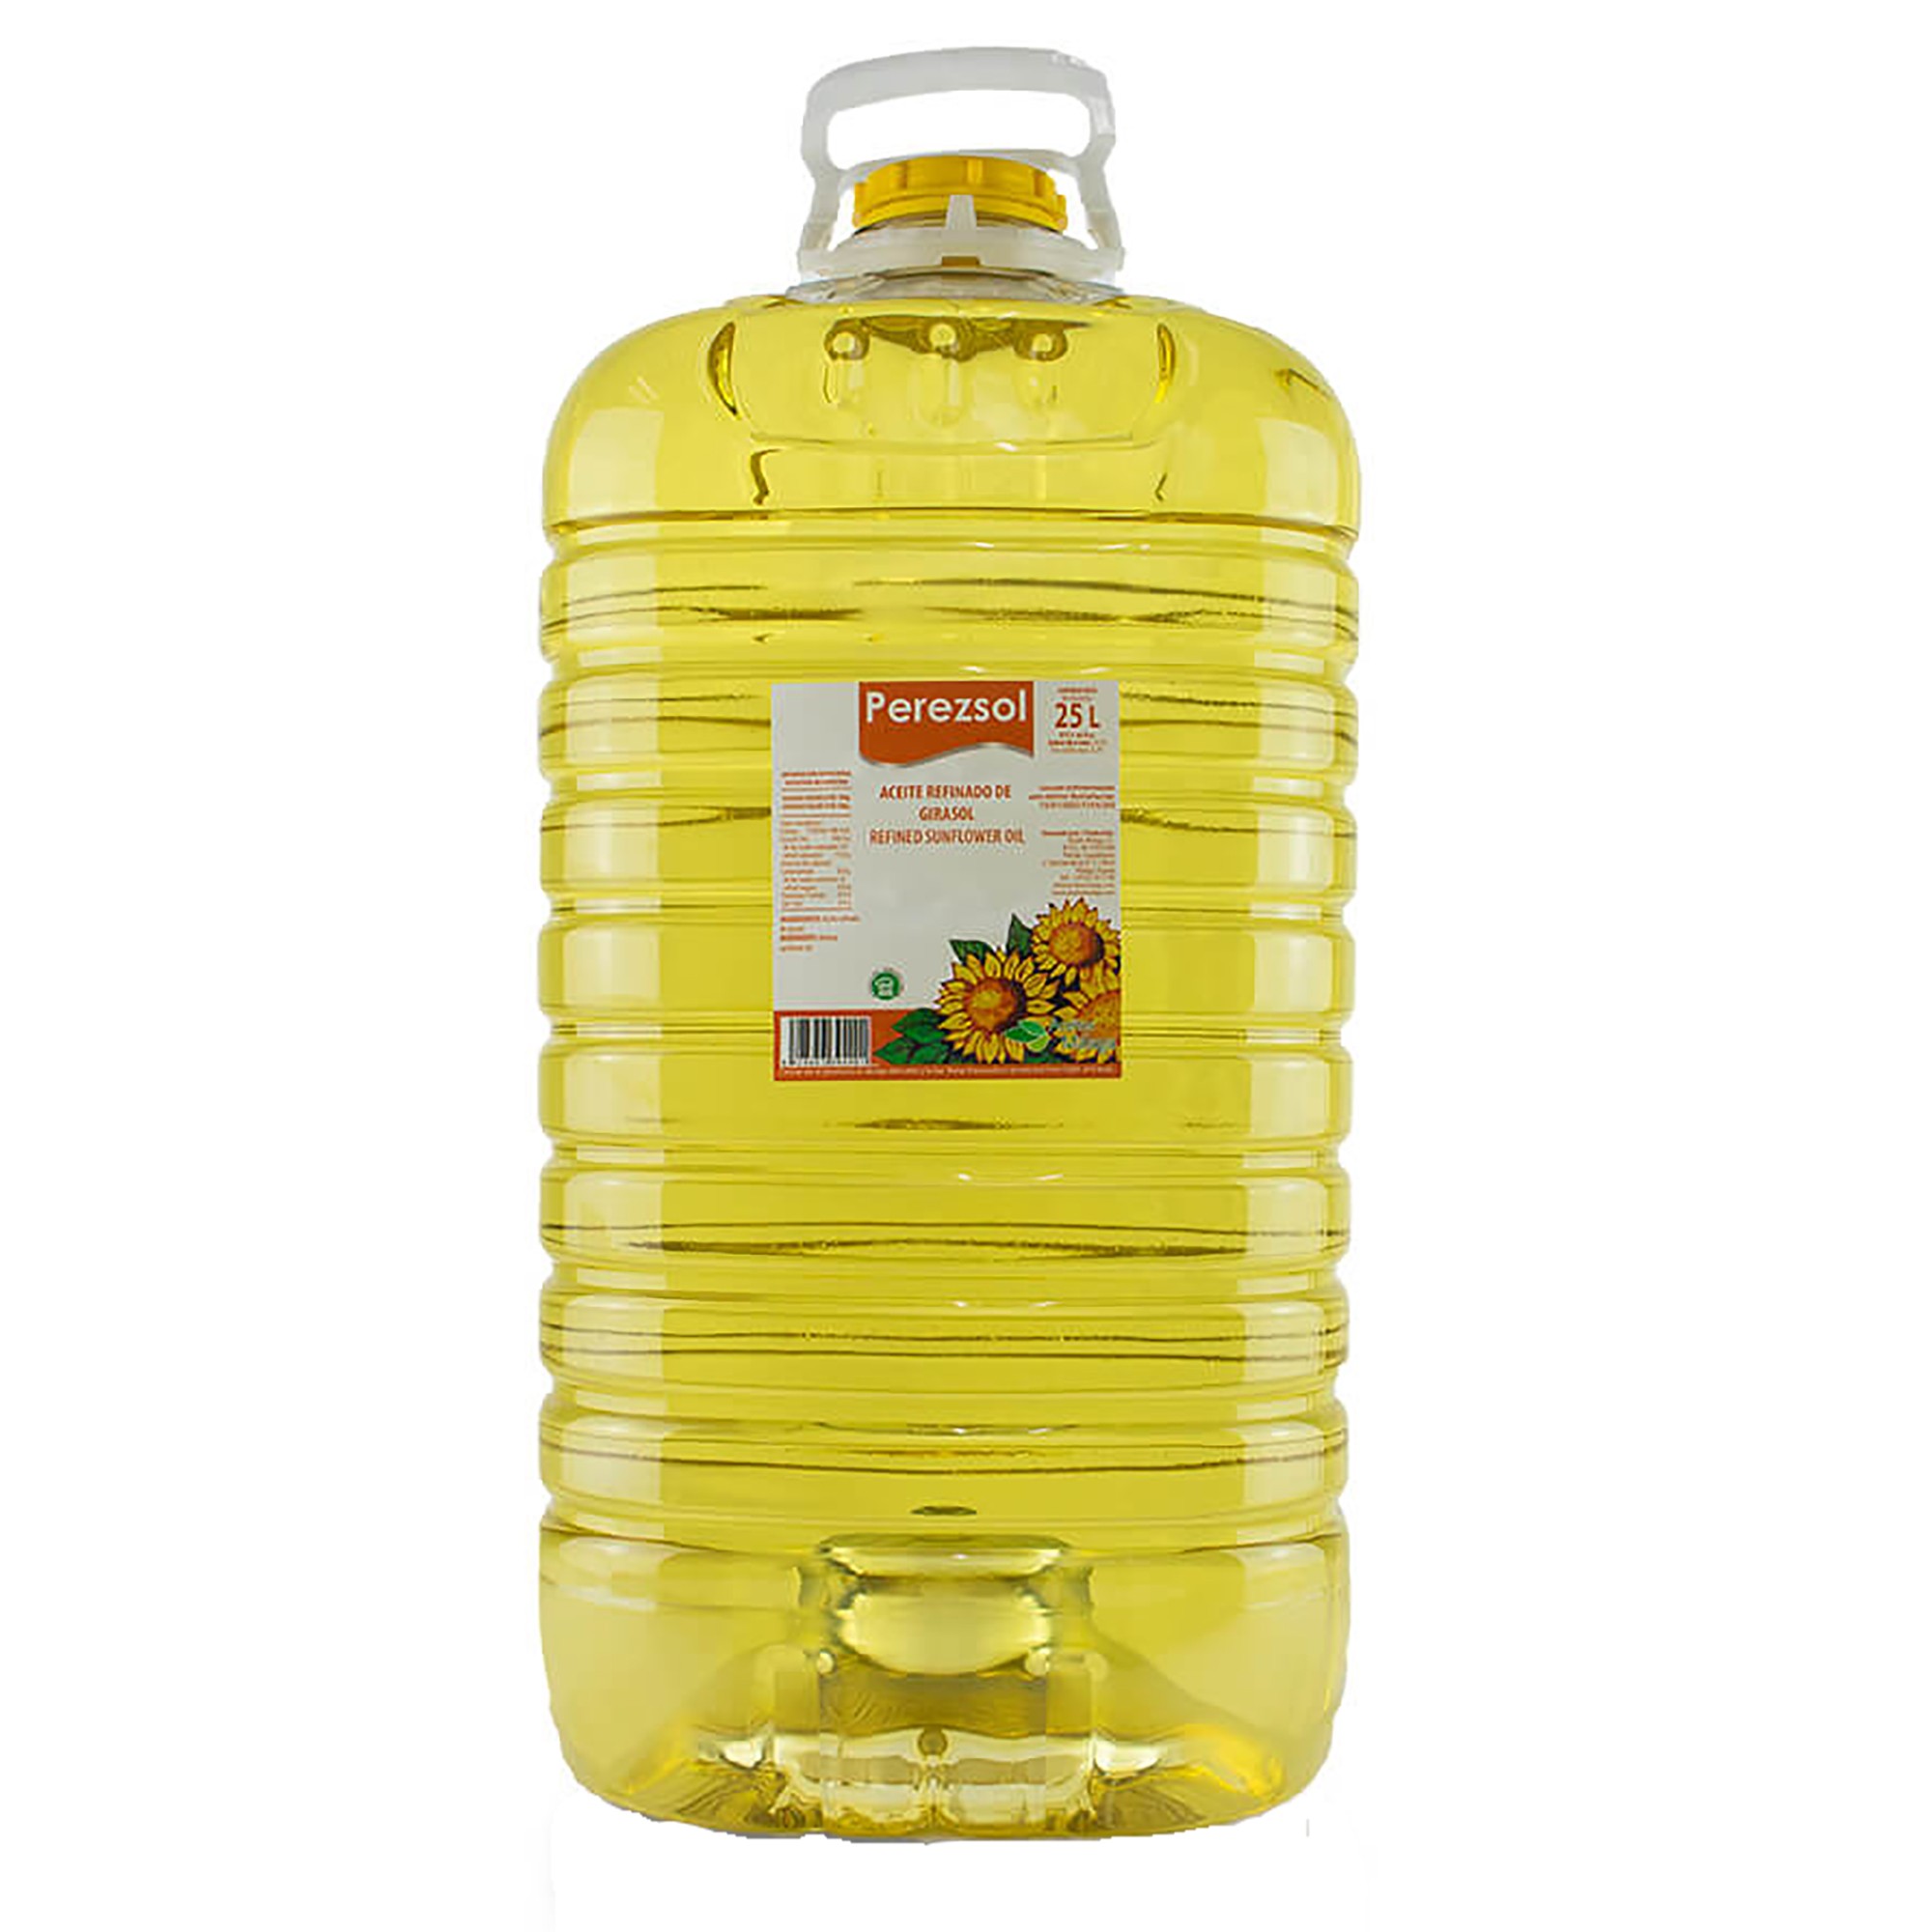 aceite refinado de girasol